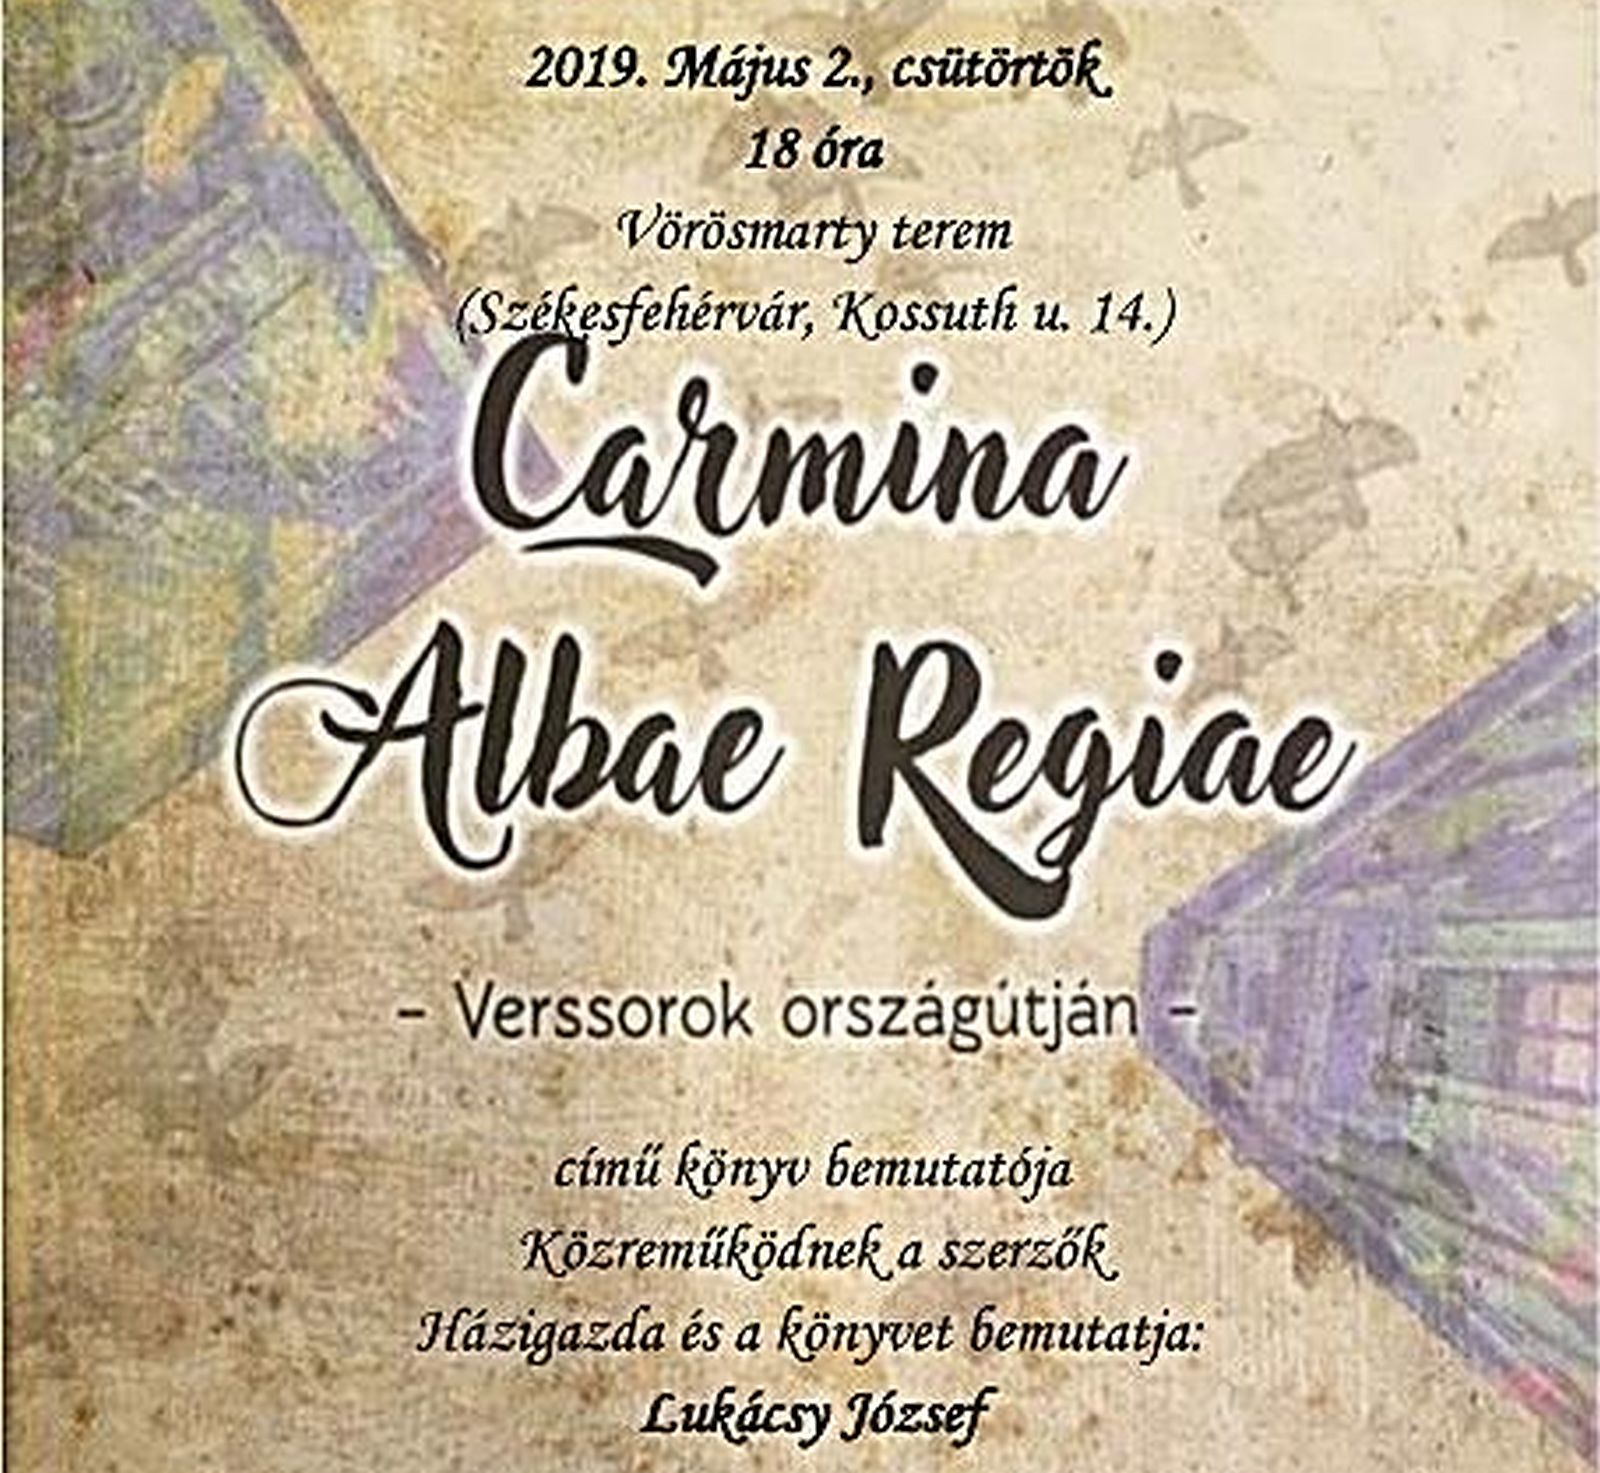 Carmina Alba Regiae-verssorok országútján - kötetbemutató a Vörösmarty teremben